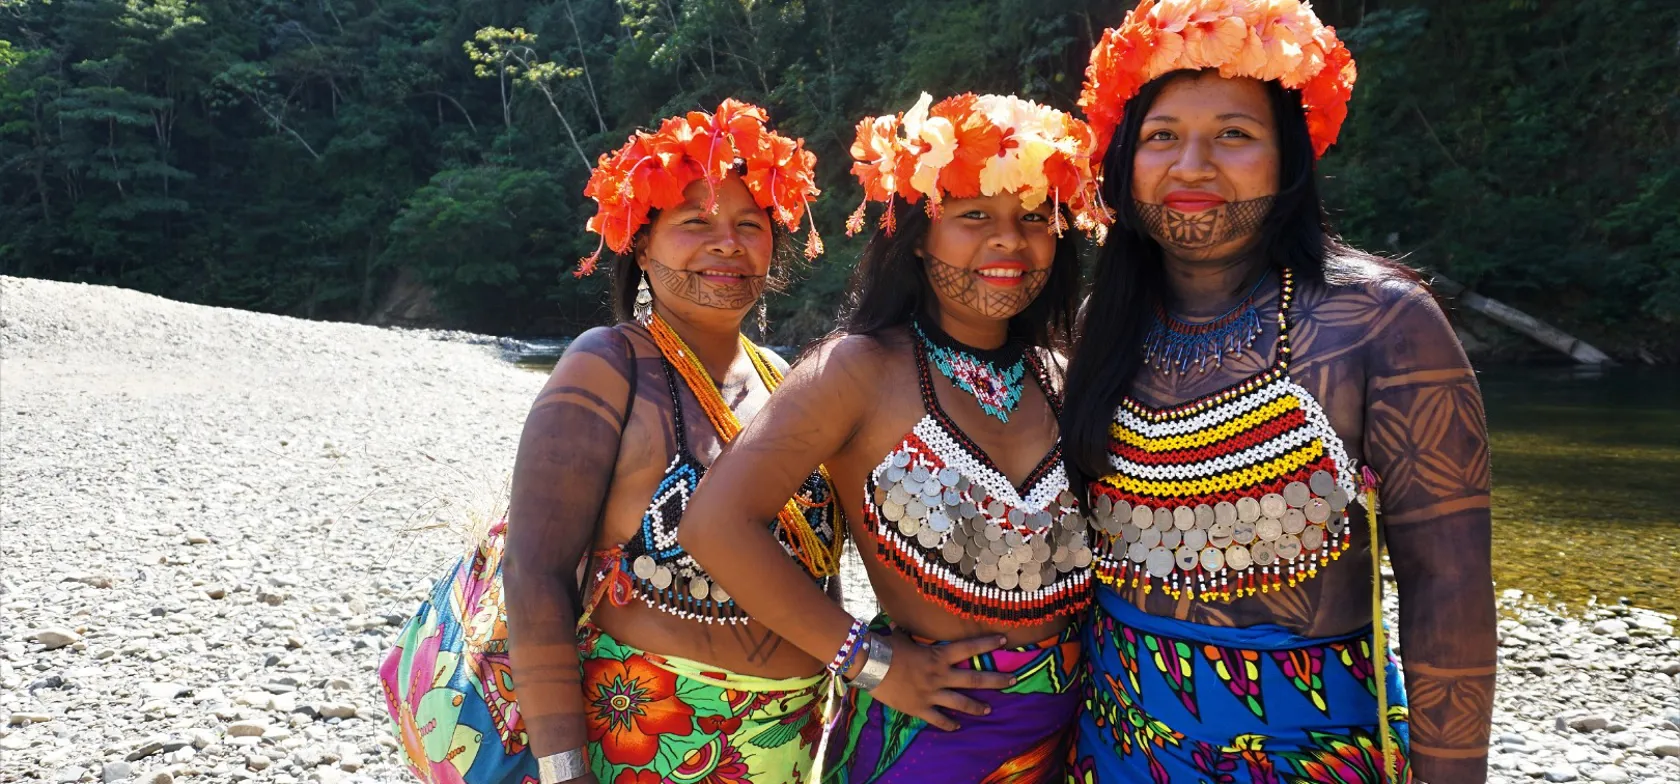 Vi besøger en Emberá indianerlandsby og får indblik i deres kultur og levevis. Foto Kathrine Svejstrup